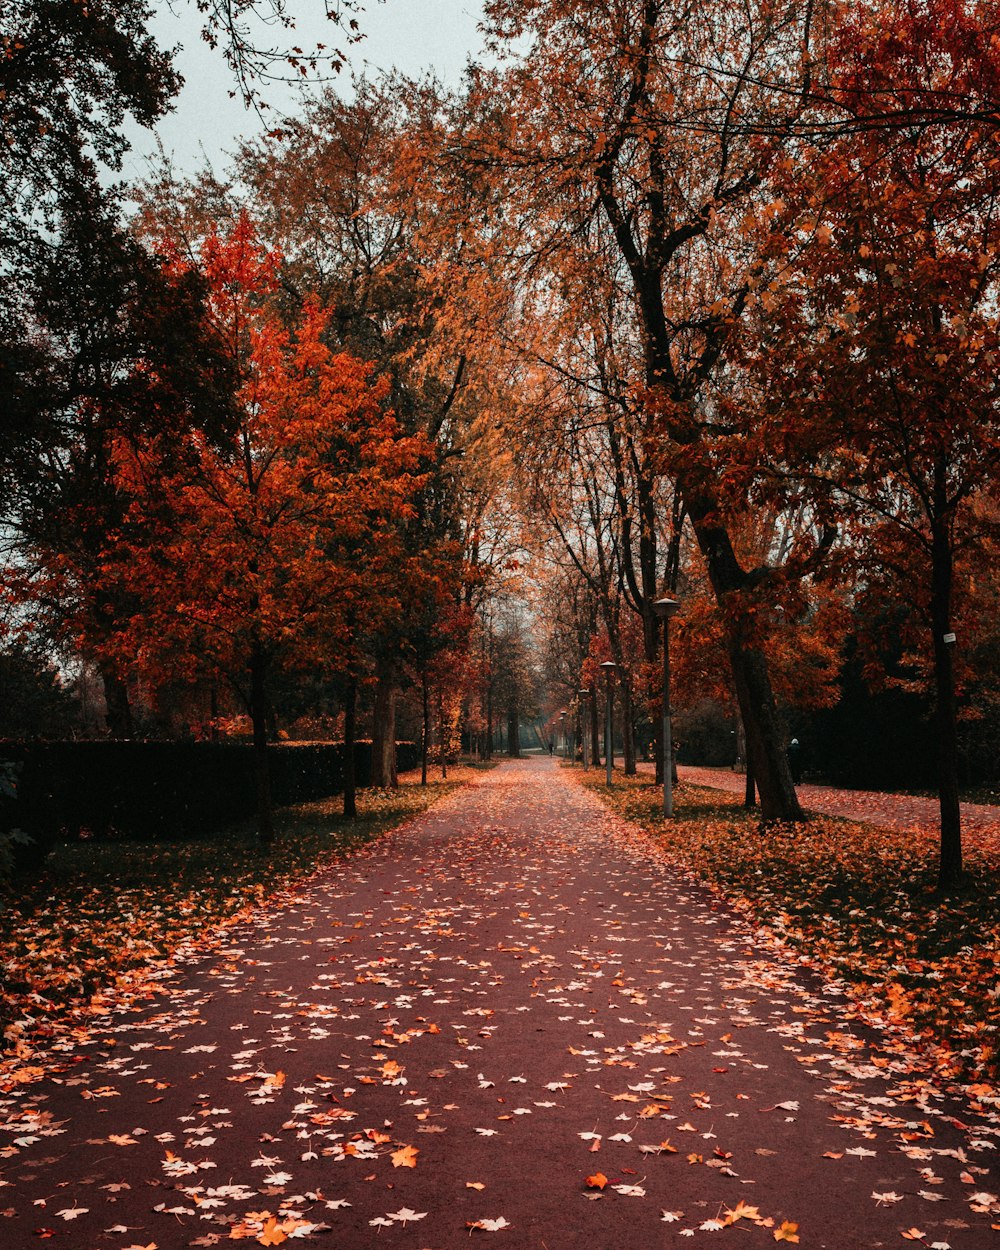 Ein Weg in einem Park mit vielen Blättern auf dem Boden